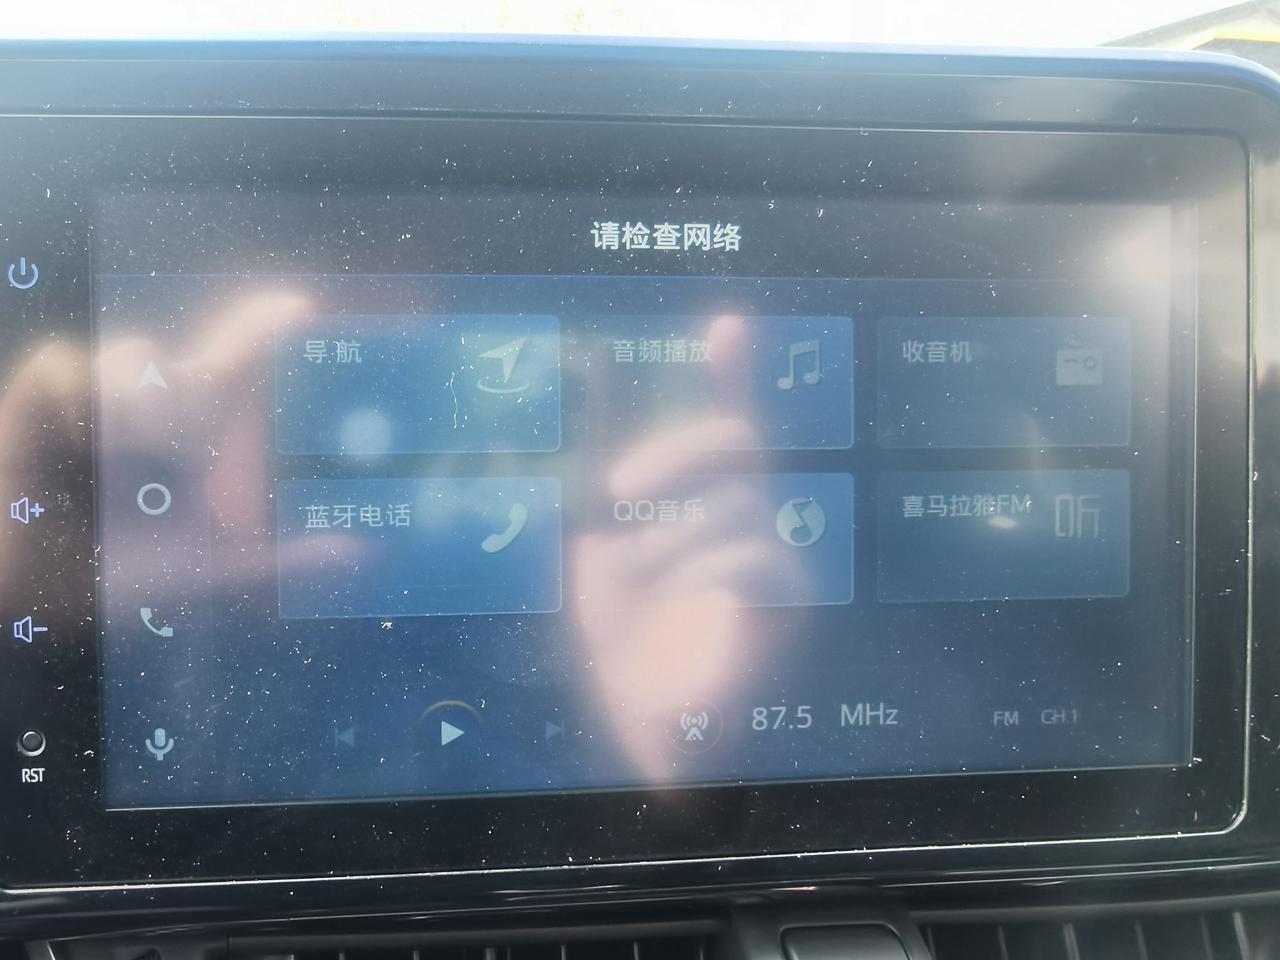 丰田C-HR 各位大神，我的车从上个月25号突然之间显示无网络，不能网络连接，连上自己的手机热点还是显示请检查网络，到底